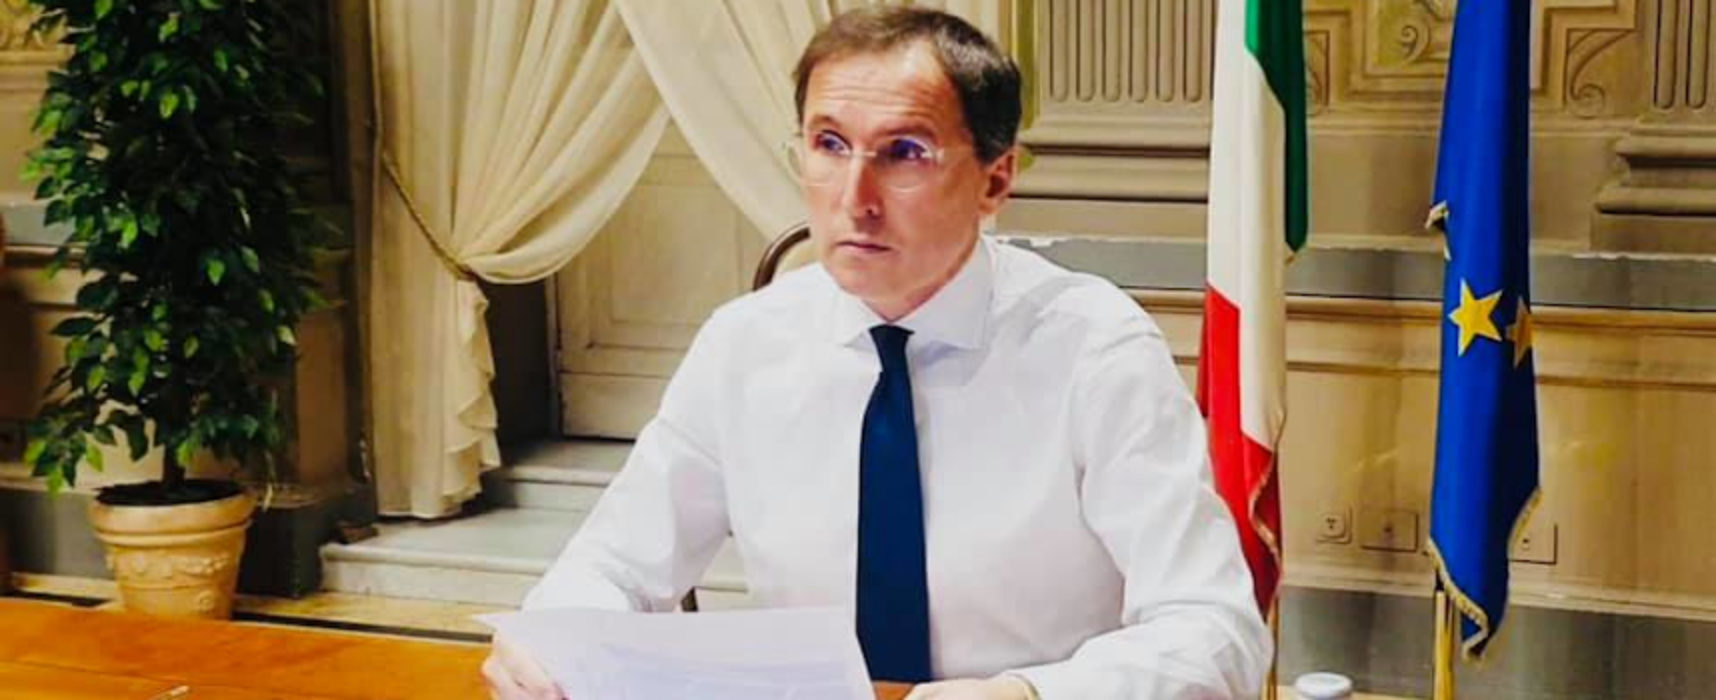 Covid, la proposta di Boccia: “Stato si faccia carico dei debiti privati causati da pandemia”